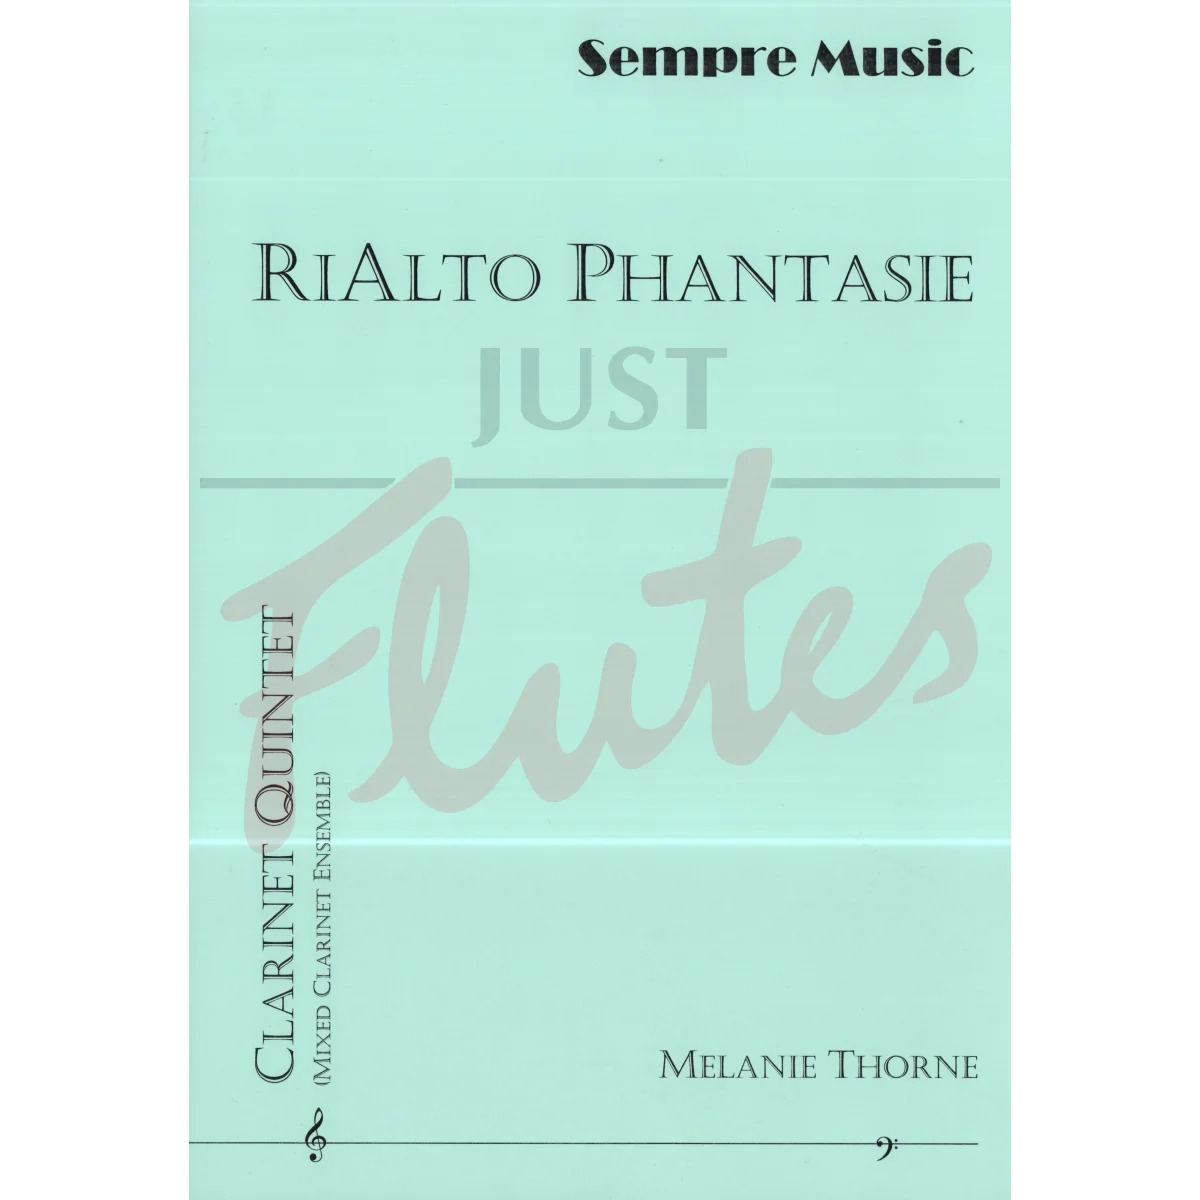 RiAlto Phantasie for Clarinet Quintet